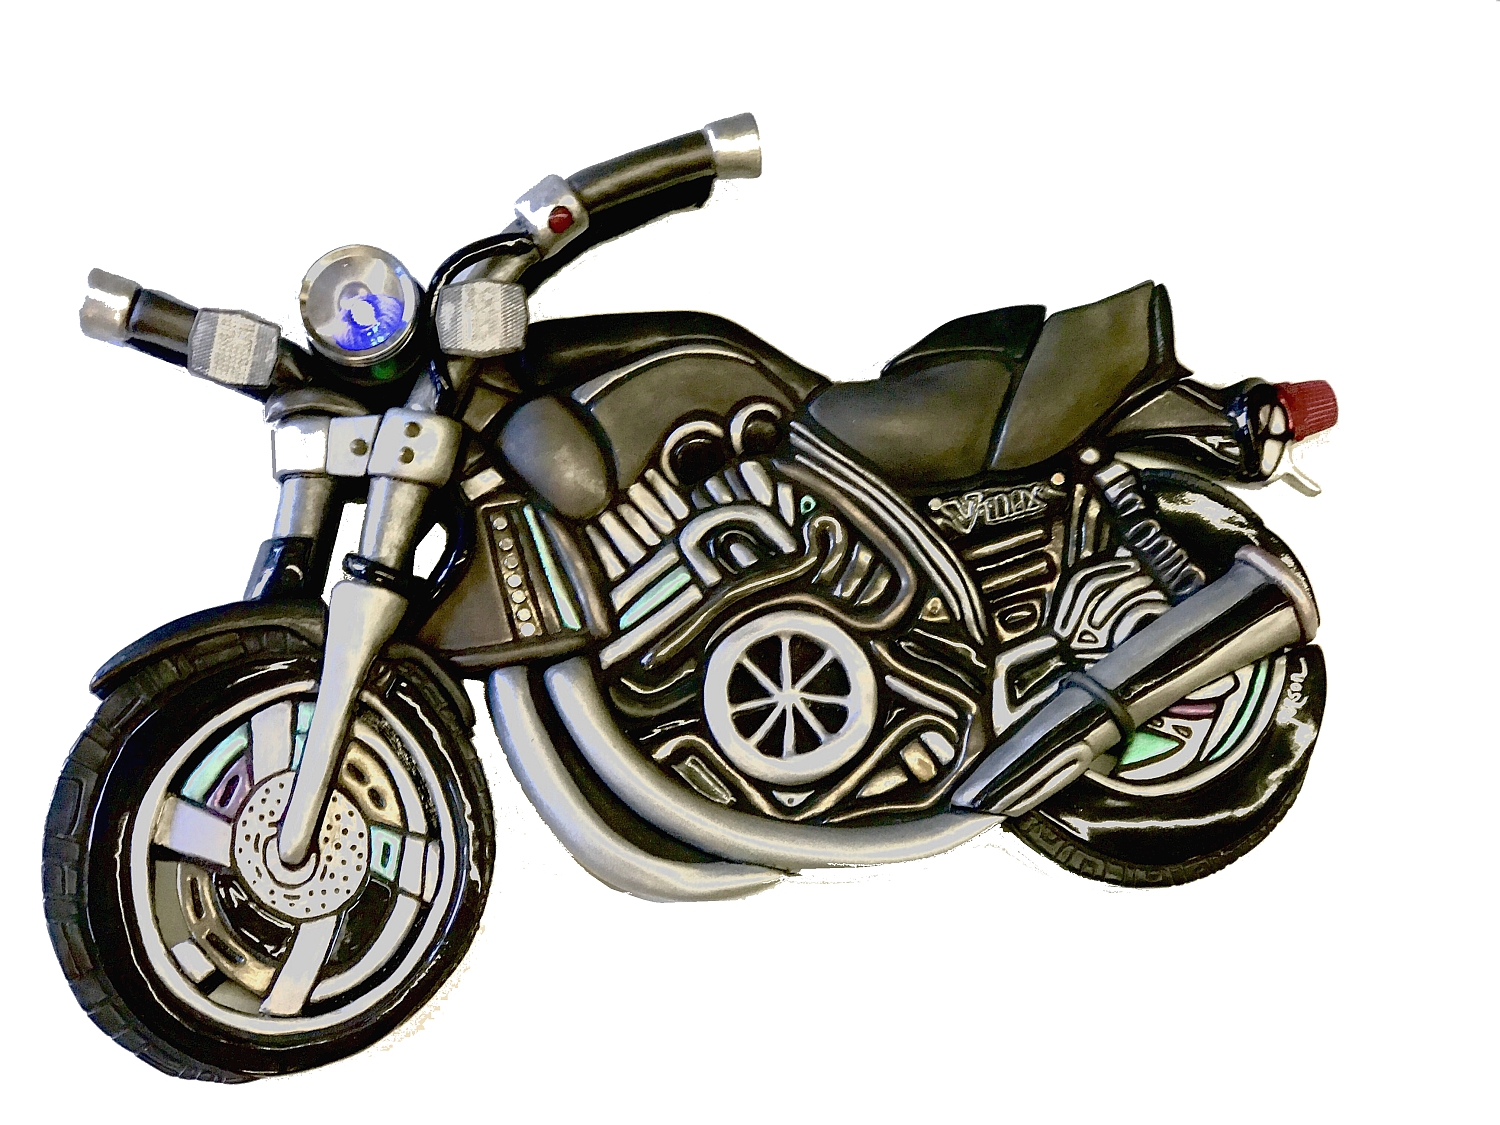 1980s Yamaha VMax Motorcycle